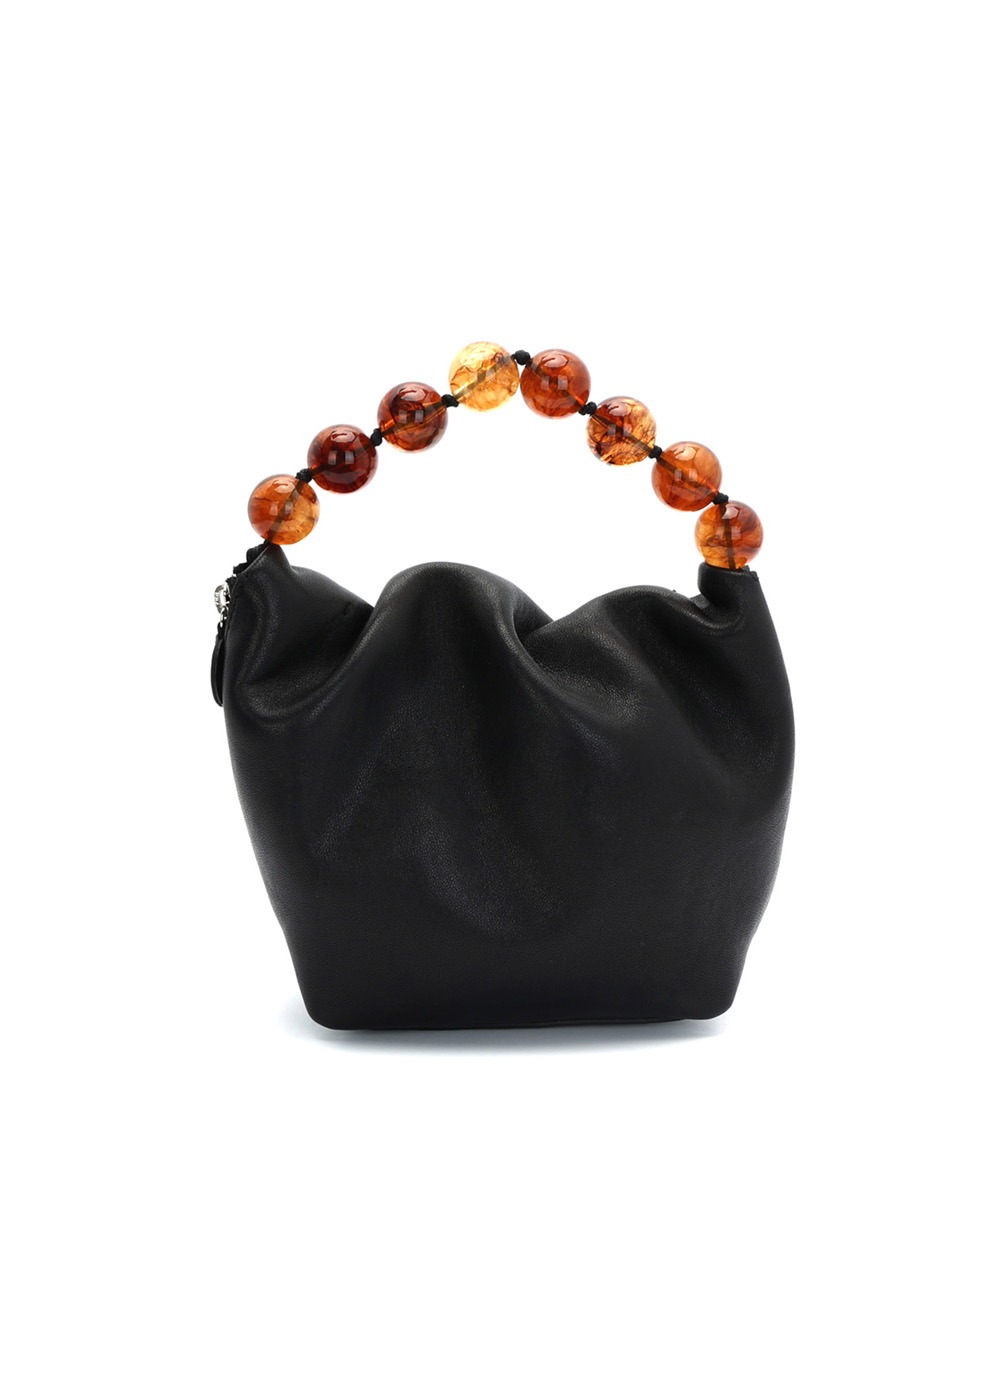 램스킨 비즈 핸들 미니백 Lambskin Beads-handle Mini Bag_Black